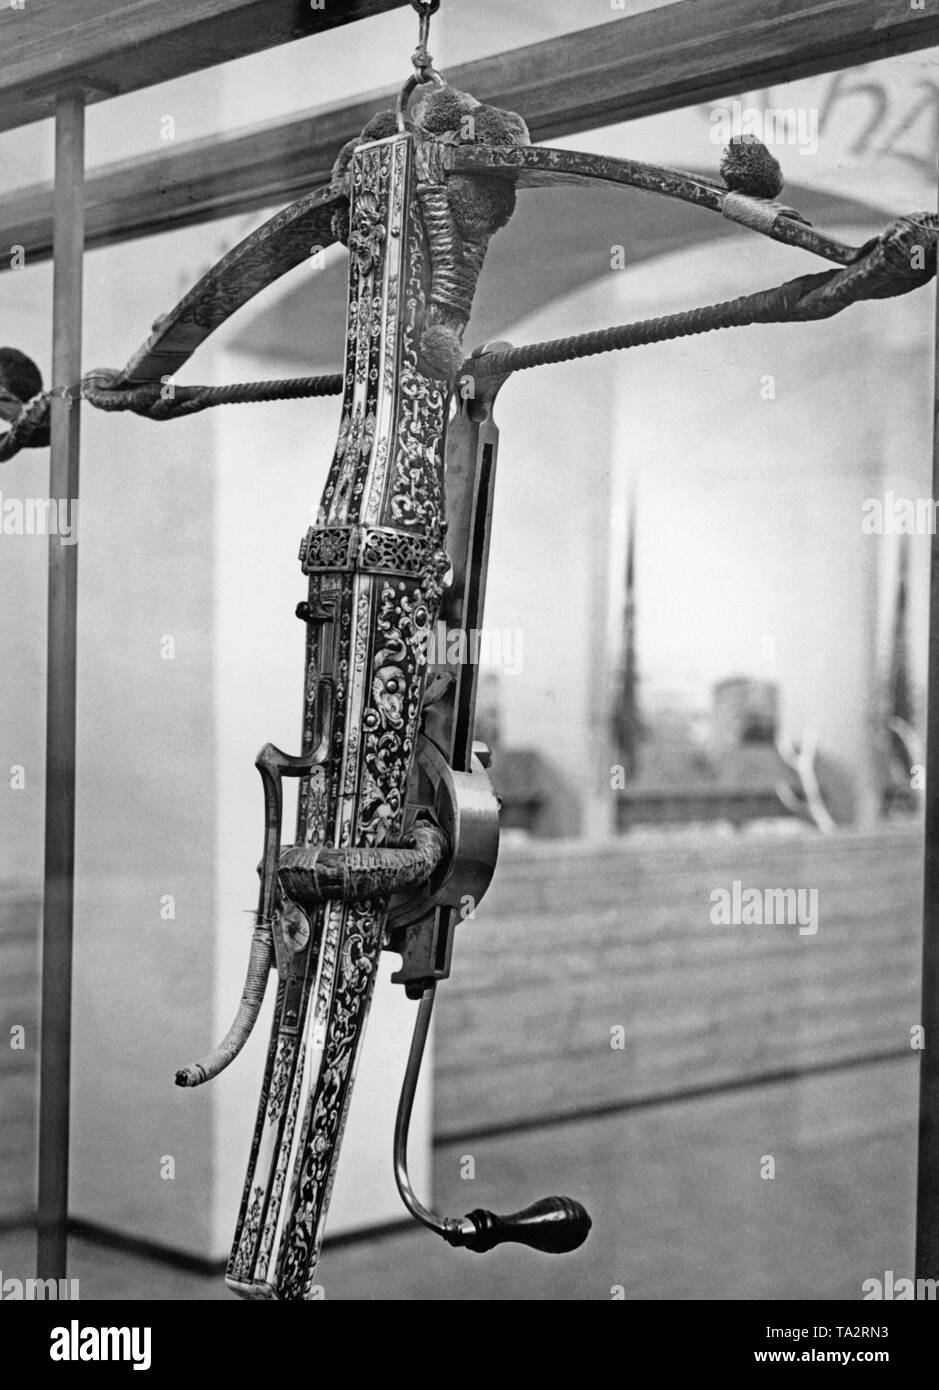 Alte Armbrust auf der Jagd Ausstellung. Vom Militärhistorisches Museum Dresden in Deutschland Armbrust aus dem 17. Jahrhundert. Stockfoto